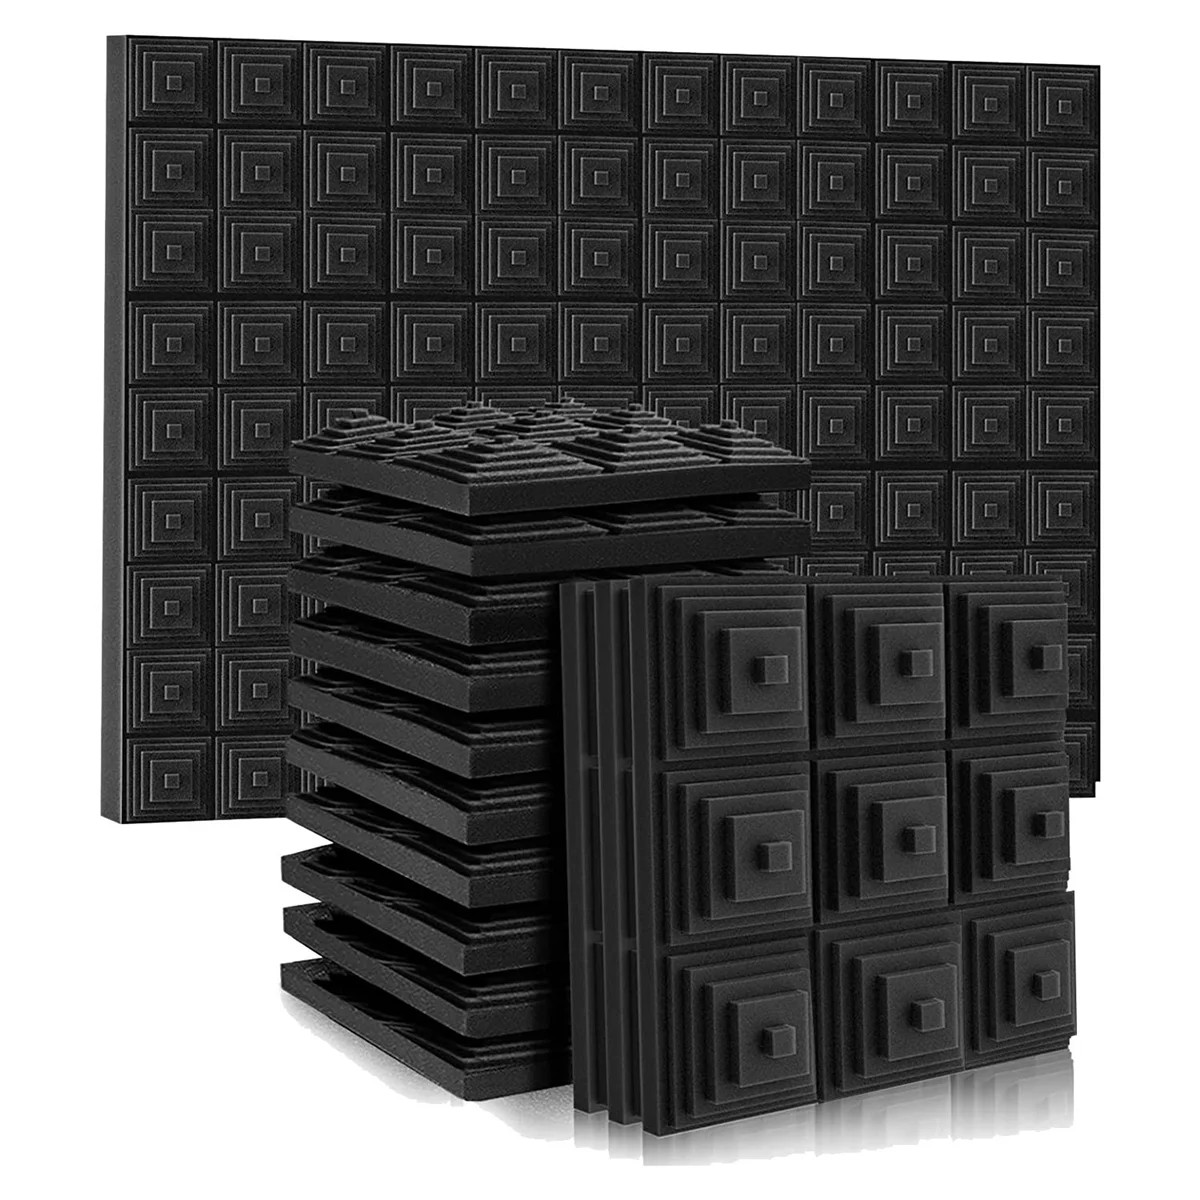 

Звукостойкие акустические панели из пенопласта, 2x12x12 дюймов, звуконепроницаемые стеновые панели, Звукопоглощающая пена для игровой комнаты, спальни, 12 шт. в упаковке